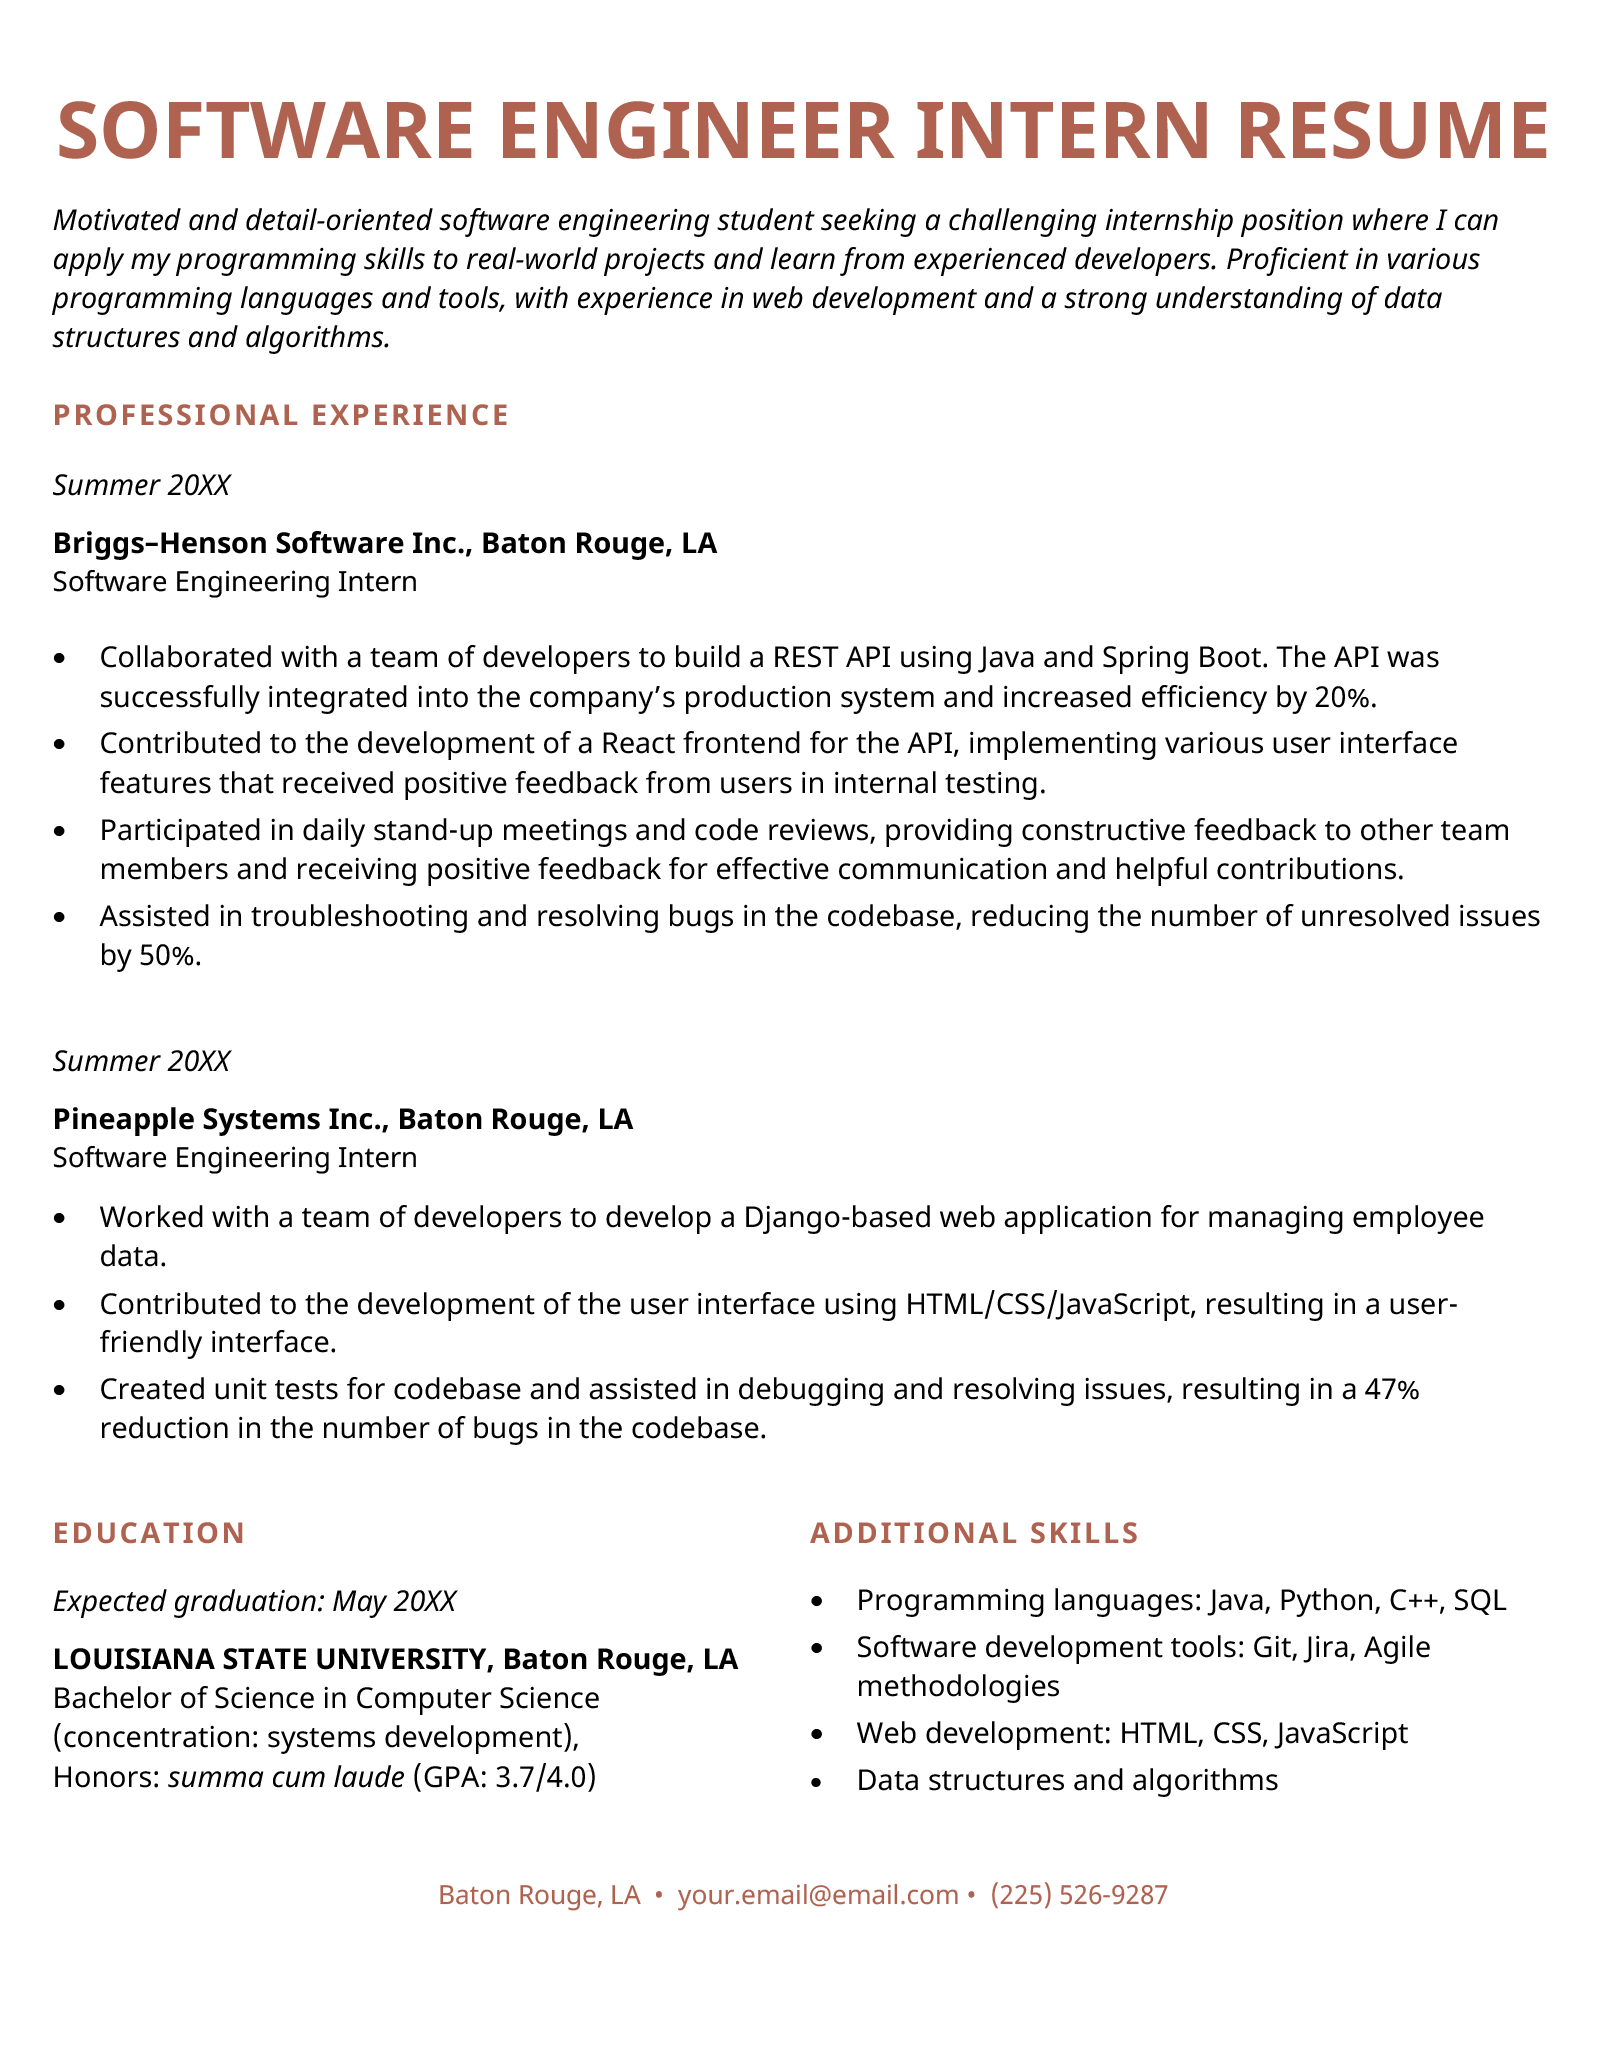 intern description for resume